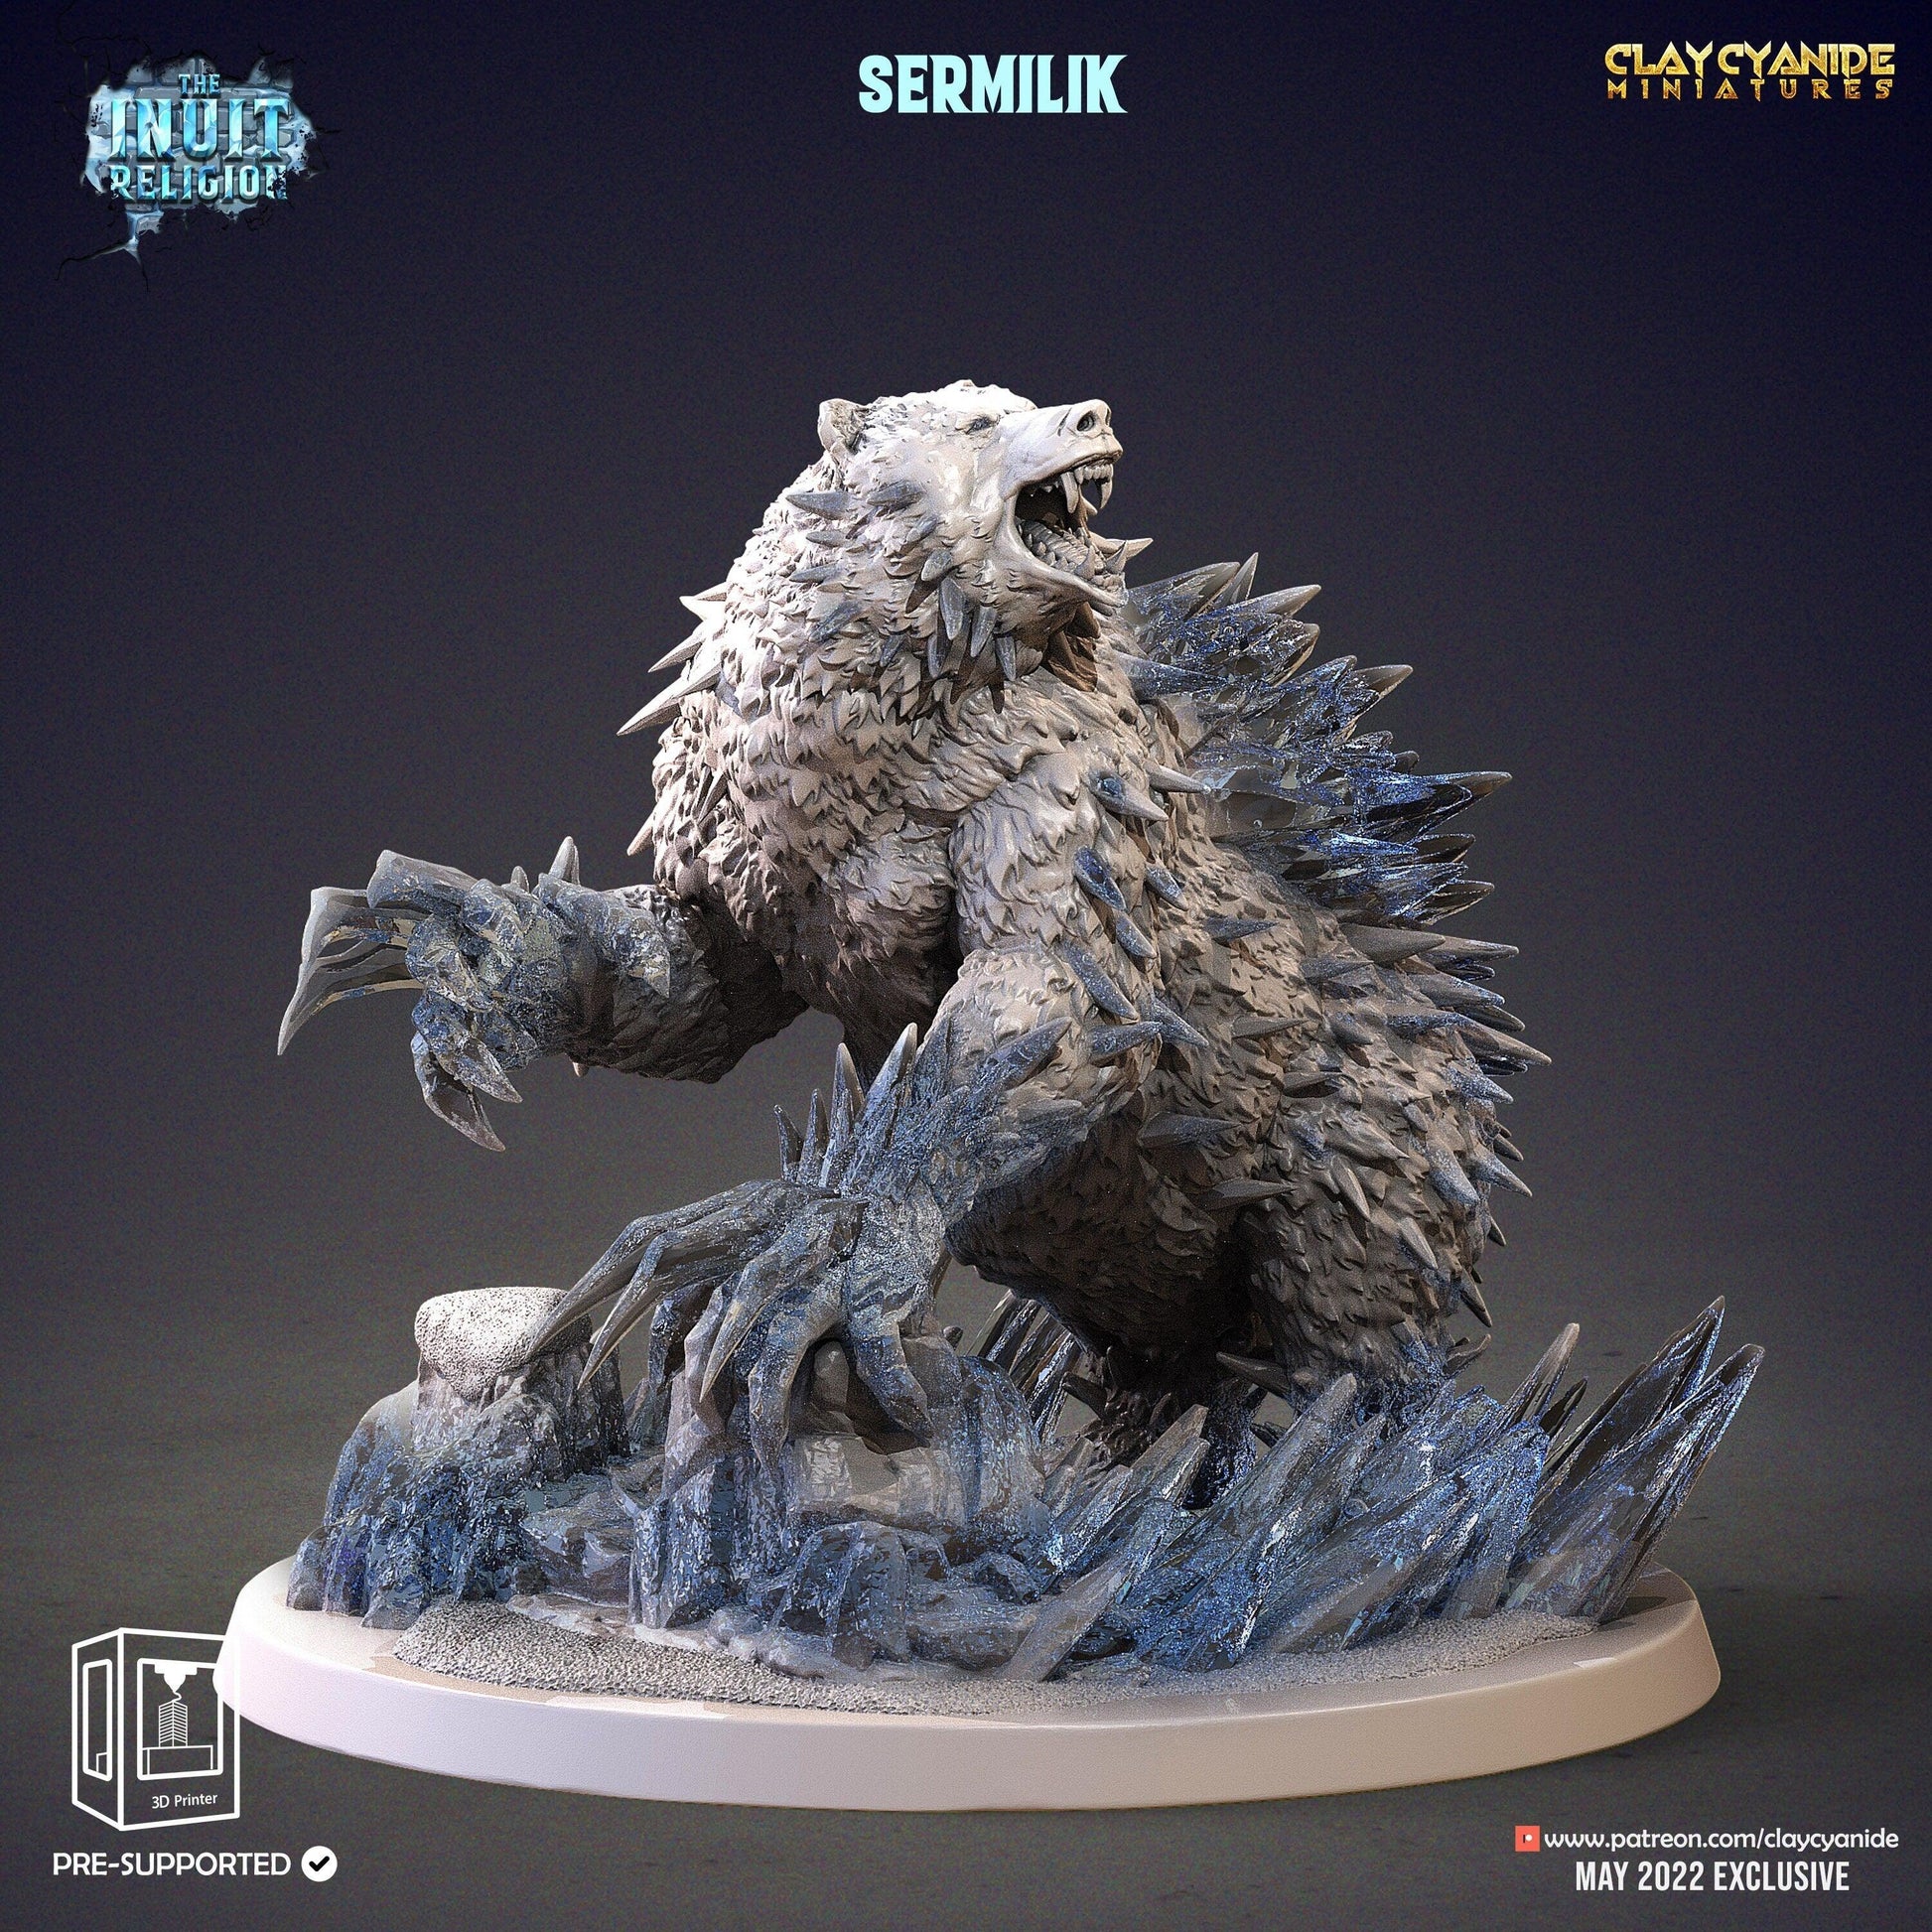 Sermilik Miniature | Inuit Religion DnD Monster | 32mm Scale - Plague Miniatures shop for DnD Miniatures